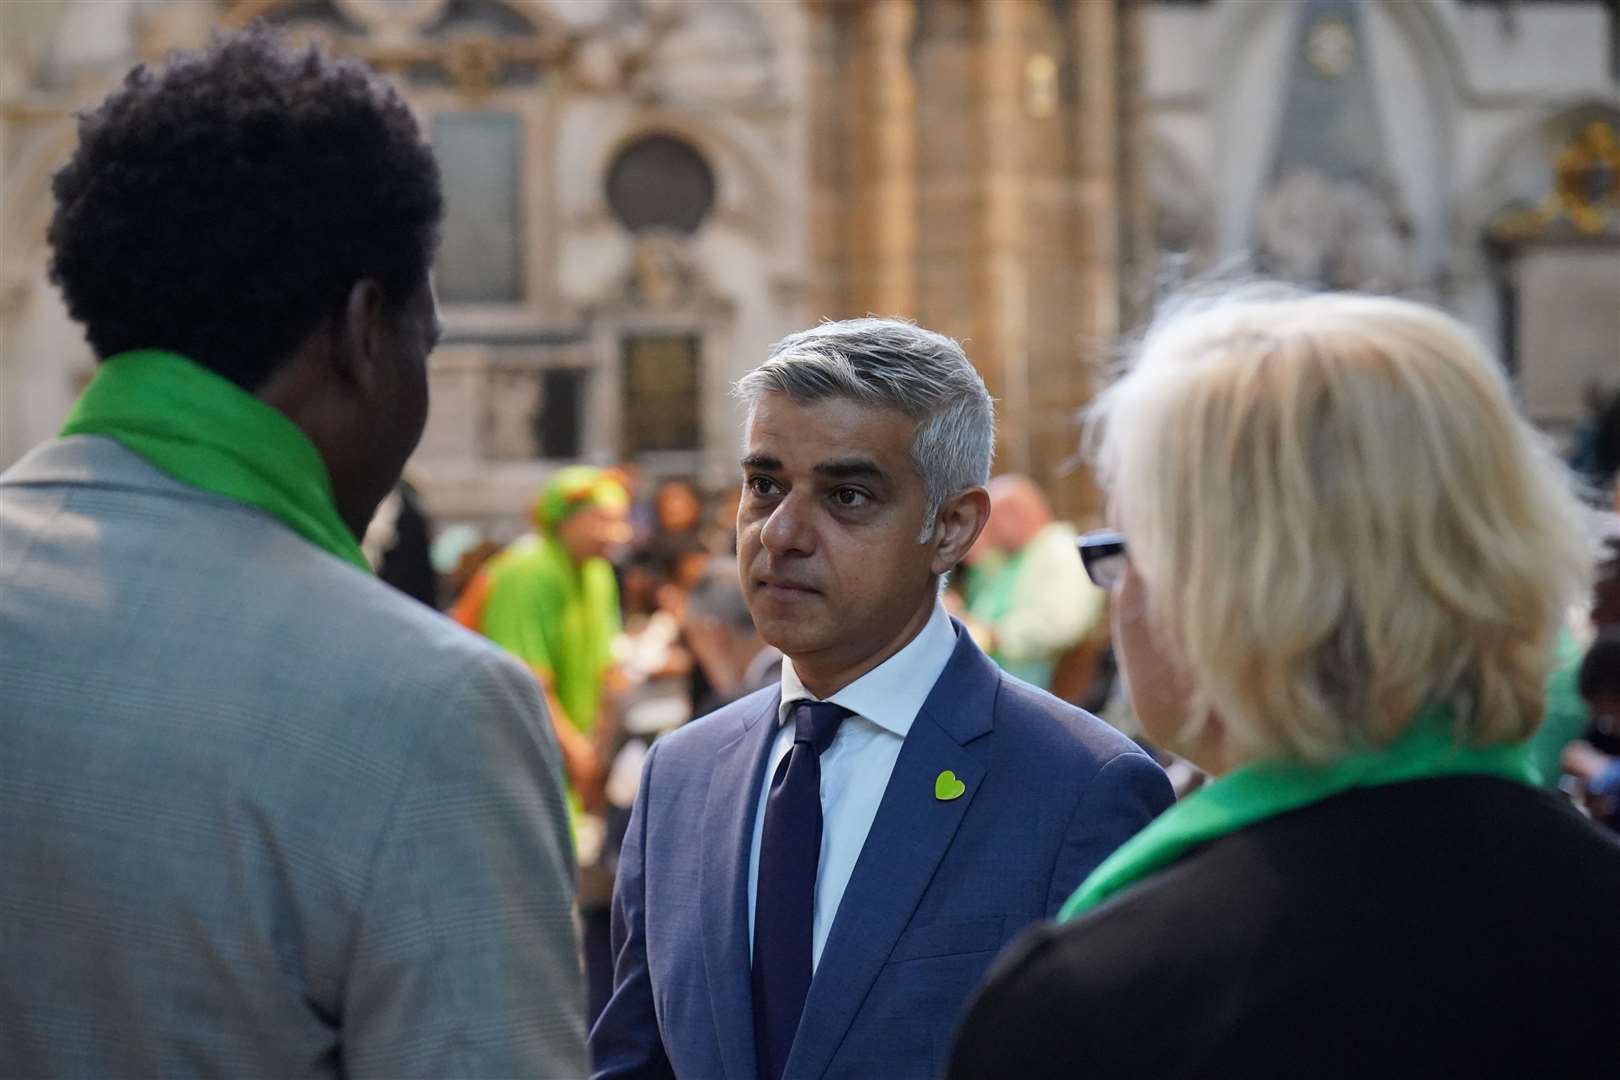 Mayor of London Sadiq Khan was among those attending the service (Jonathan Brady/PA)